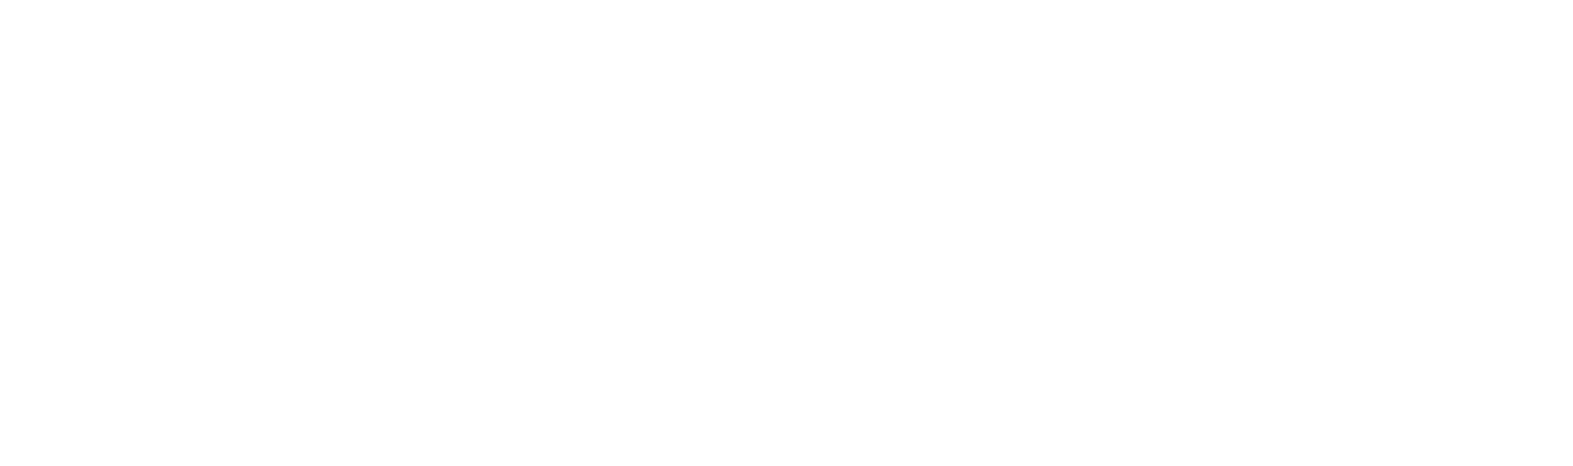 Tagtool.org